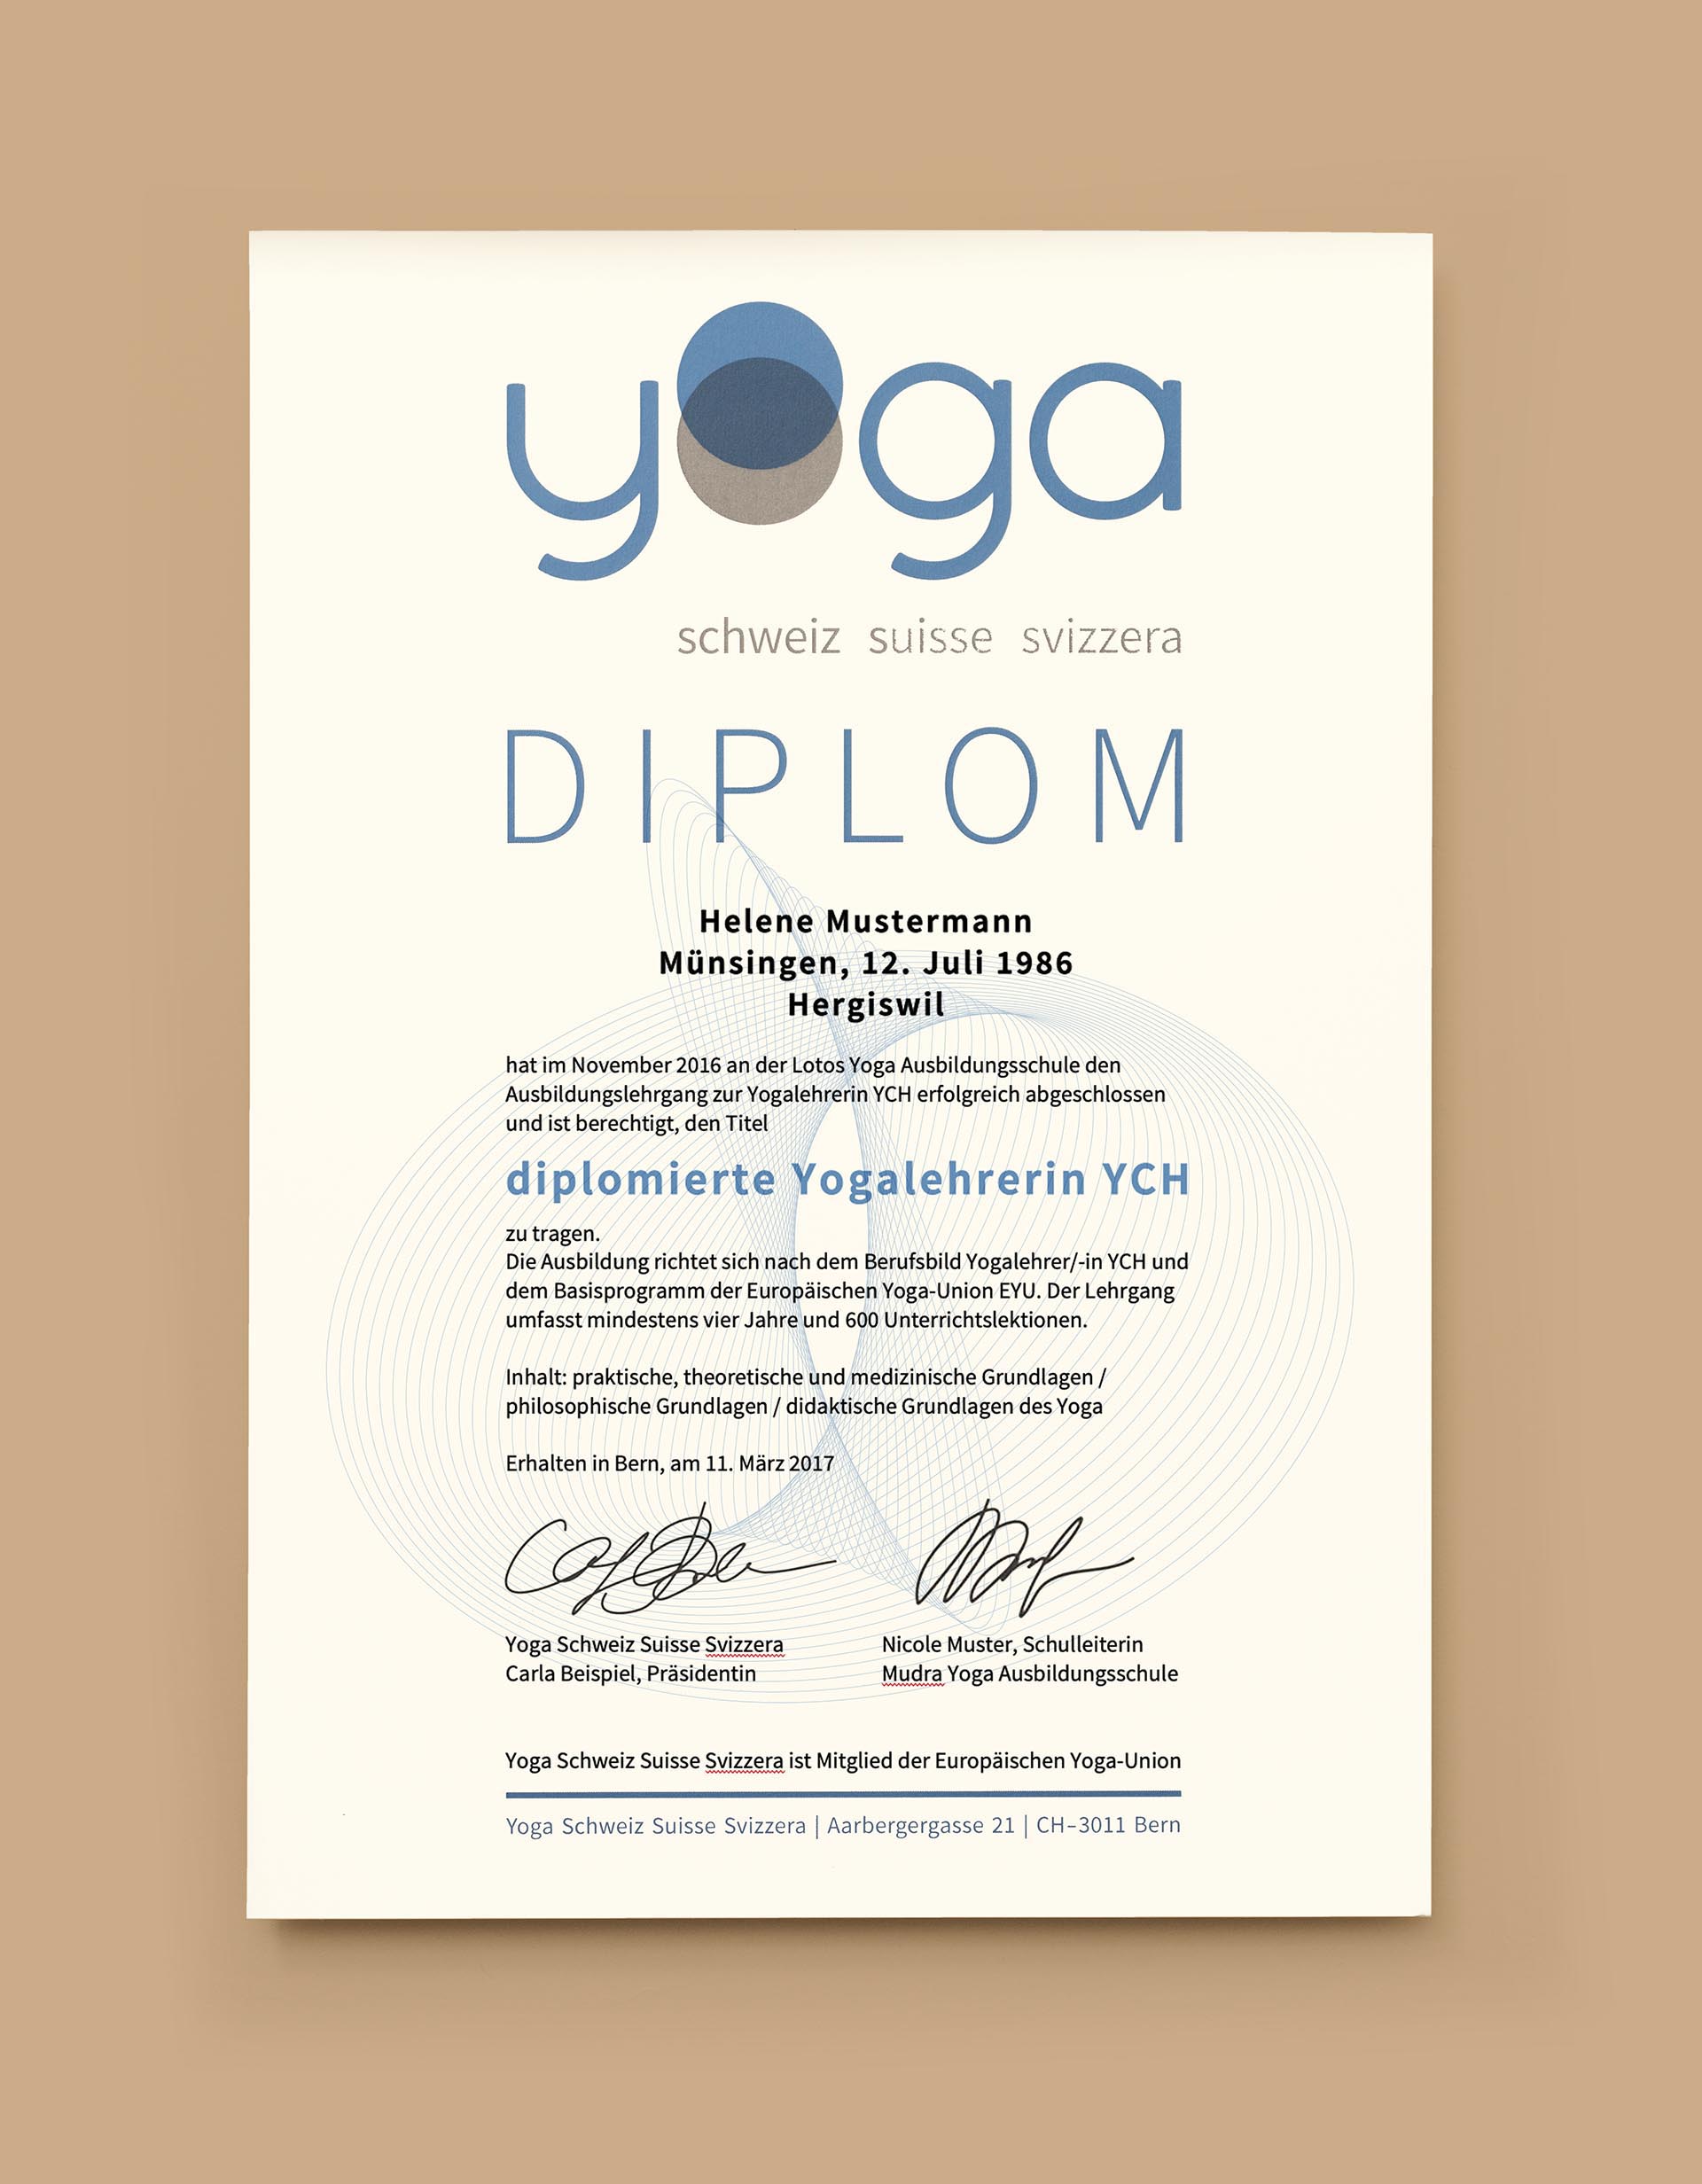 Yoga Schweiz – Rebranding